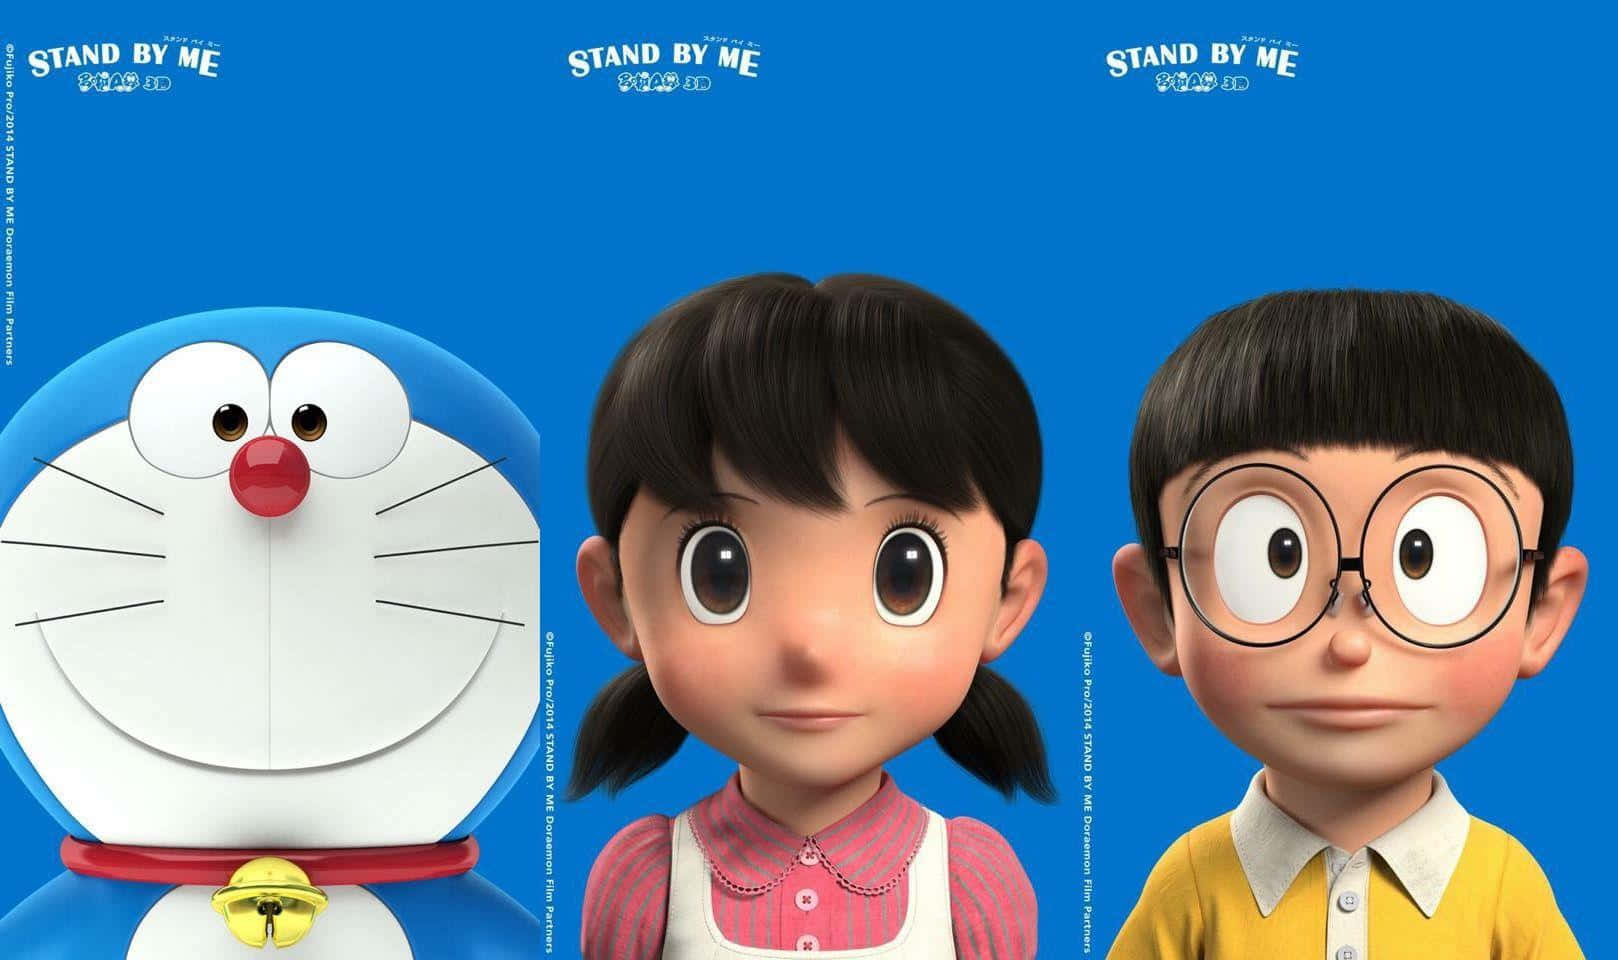 Væren Del Af Doraemons Verden Af Robotter Og Gadgets.